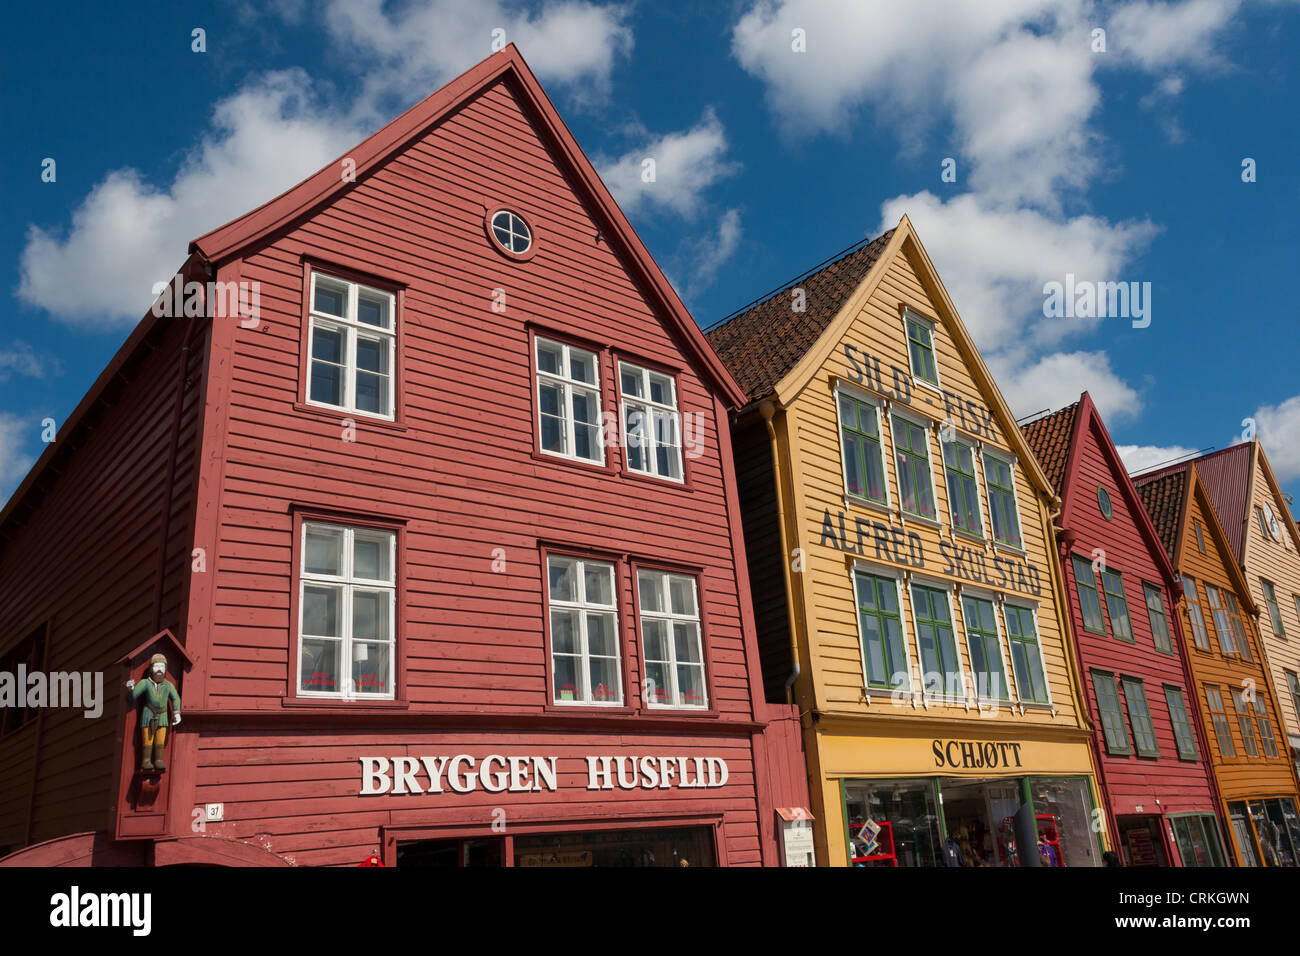 Bryggen - Los edificios de madera del antiguo muelle de Bergen. Foto de stock